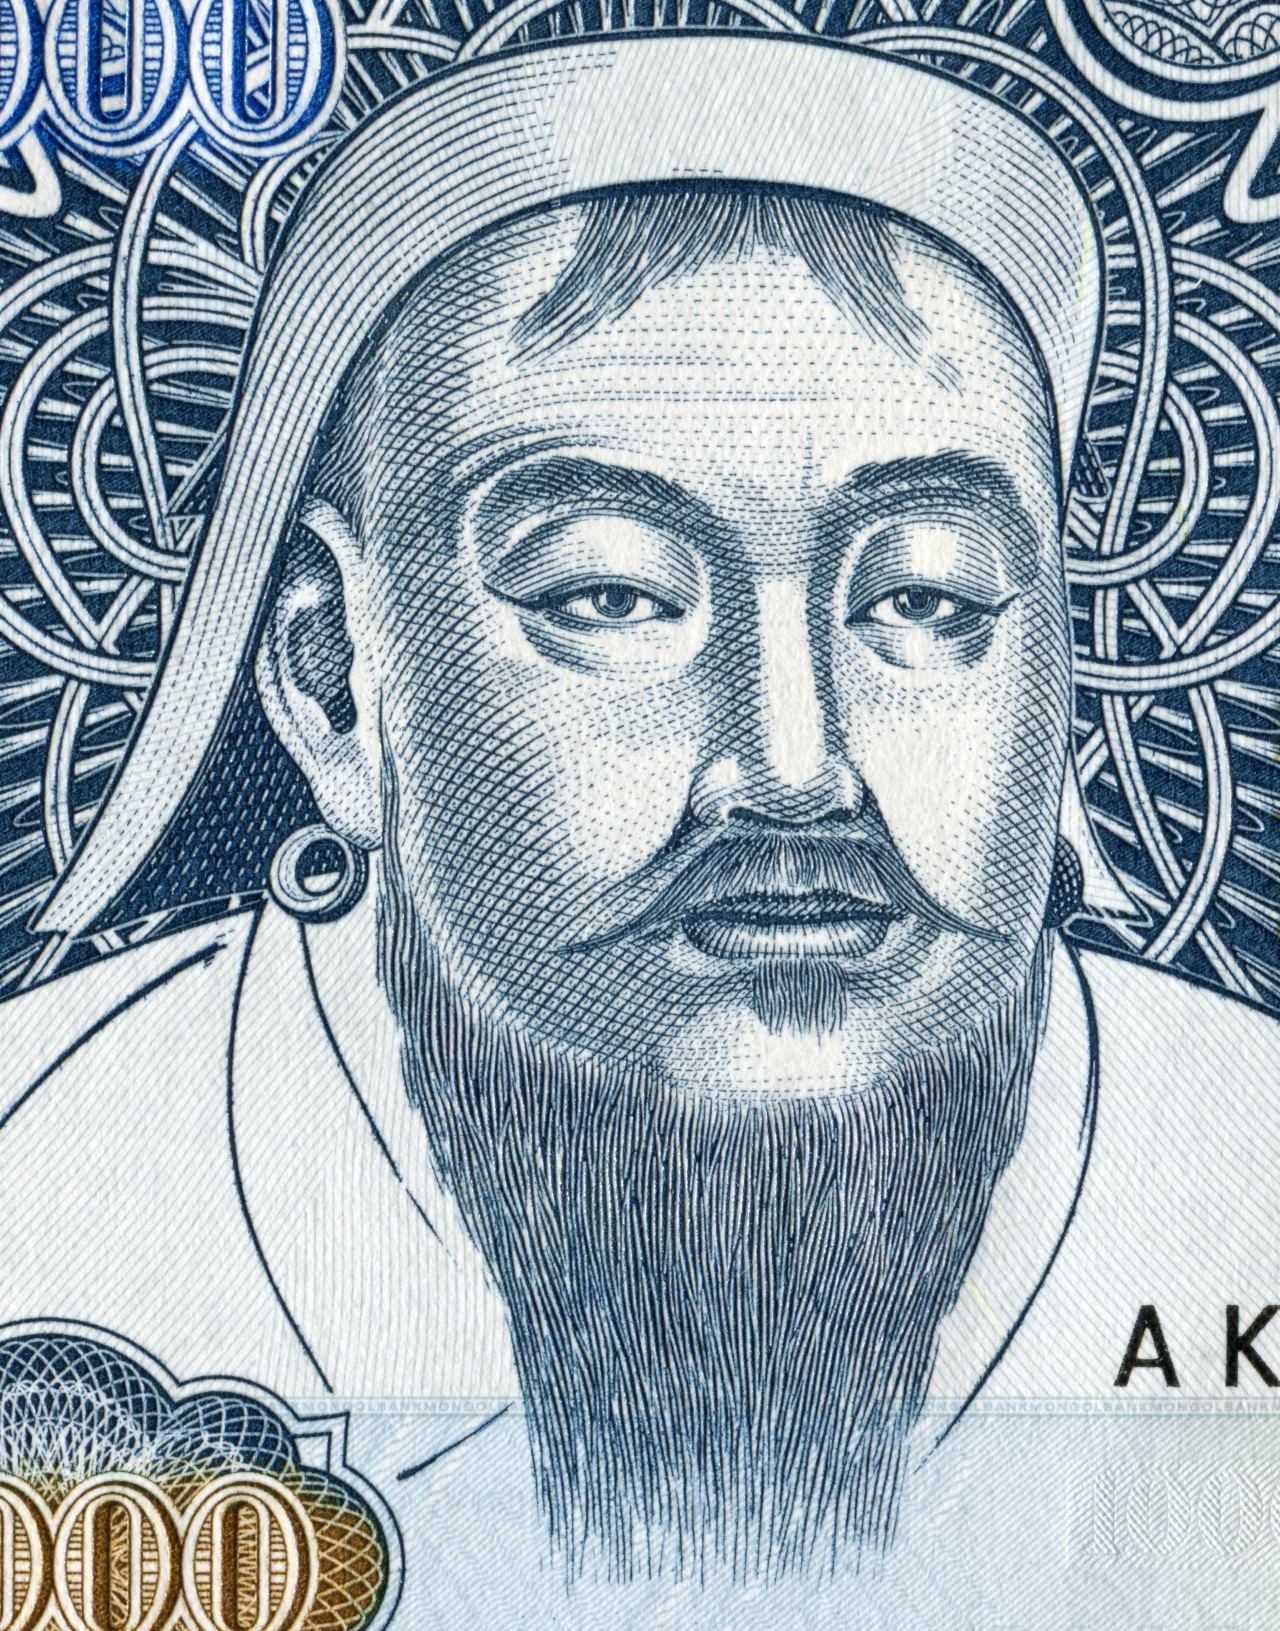 <p>Чингис Хан: Чингис Хан е известен в целия свят като бруталния лидер на монголите и бащата на най-голямата империя, която светът някога е познавал. При Чингис хан Монголската империя преминава от малка група племена до държавно устройство, простиращо се от бреговете на Китай чак до Източна Европа. Твърди се, че Чингис хан е оставял след себе си масивна следа от разрушения, където и да отиде.</p>